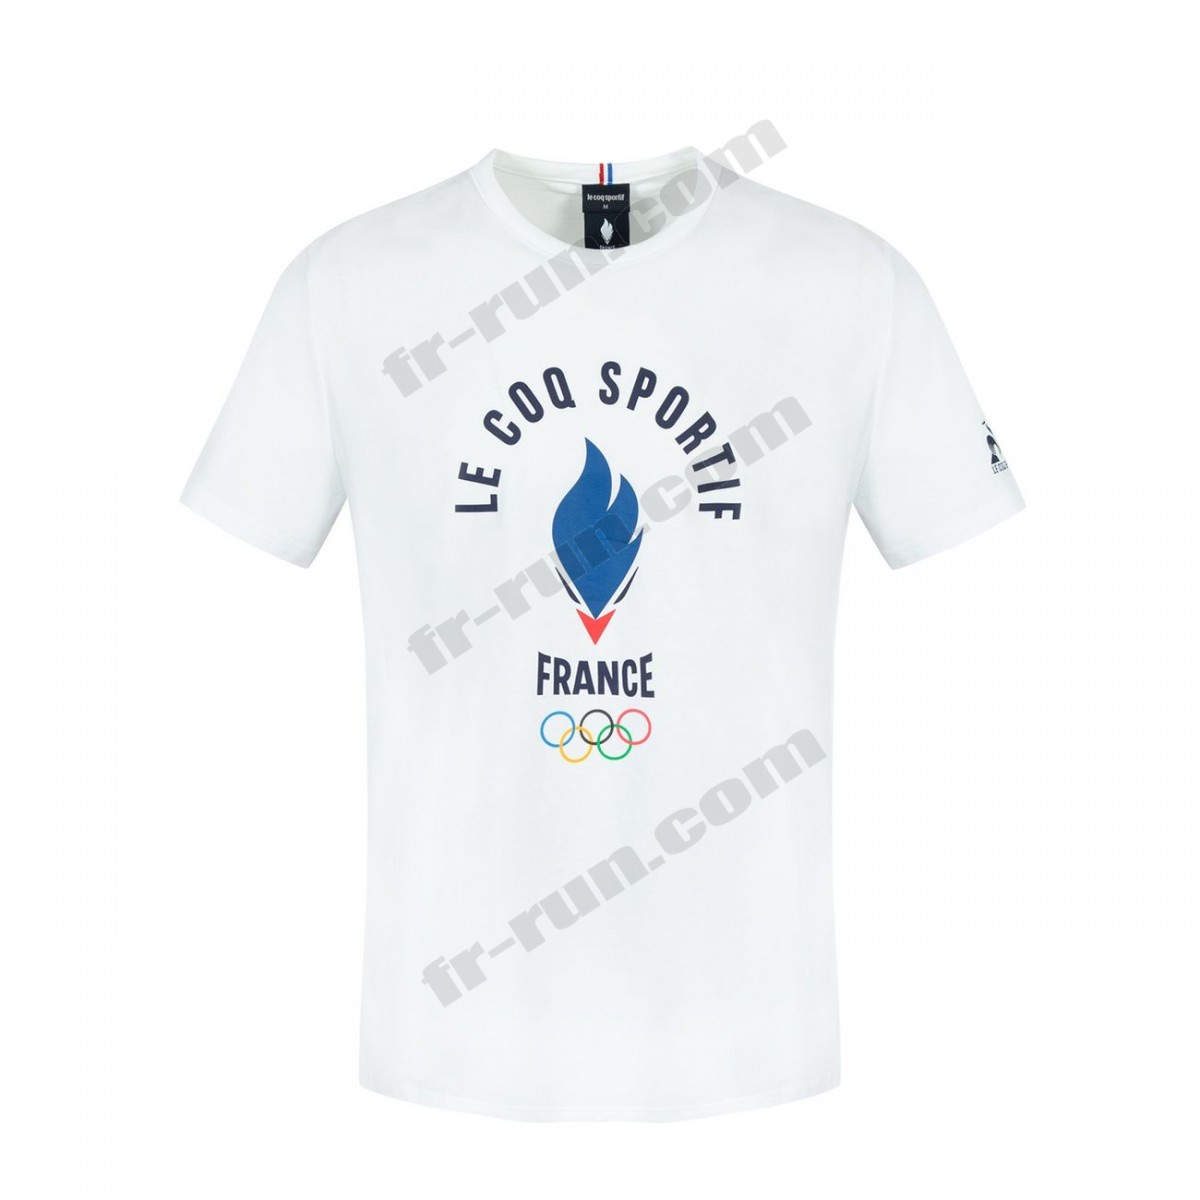 Le Coq Sportif/running adulte LE COQ SPORTIF T-shirt manches longues Équipe de France Olympique Unisexe √ Nouveau style √ Soldes - -1